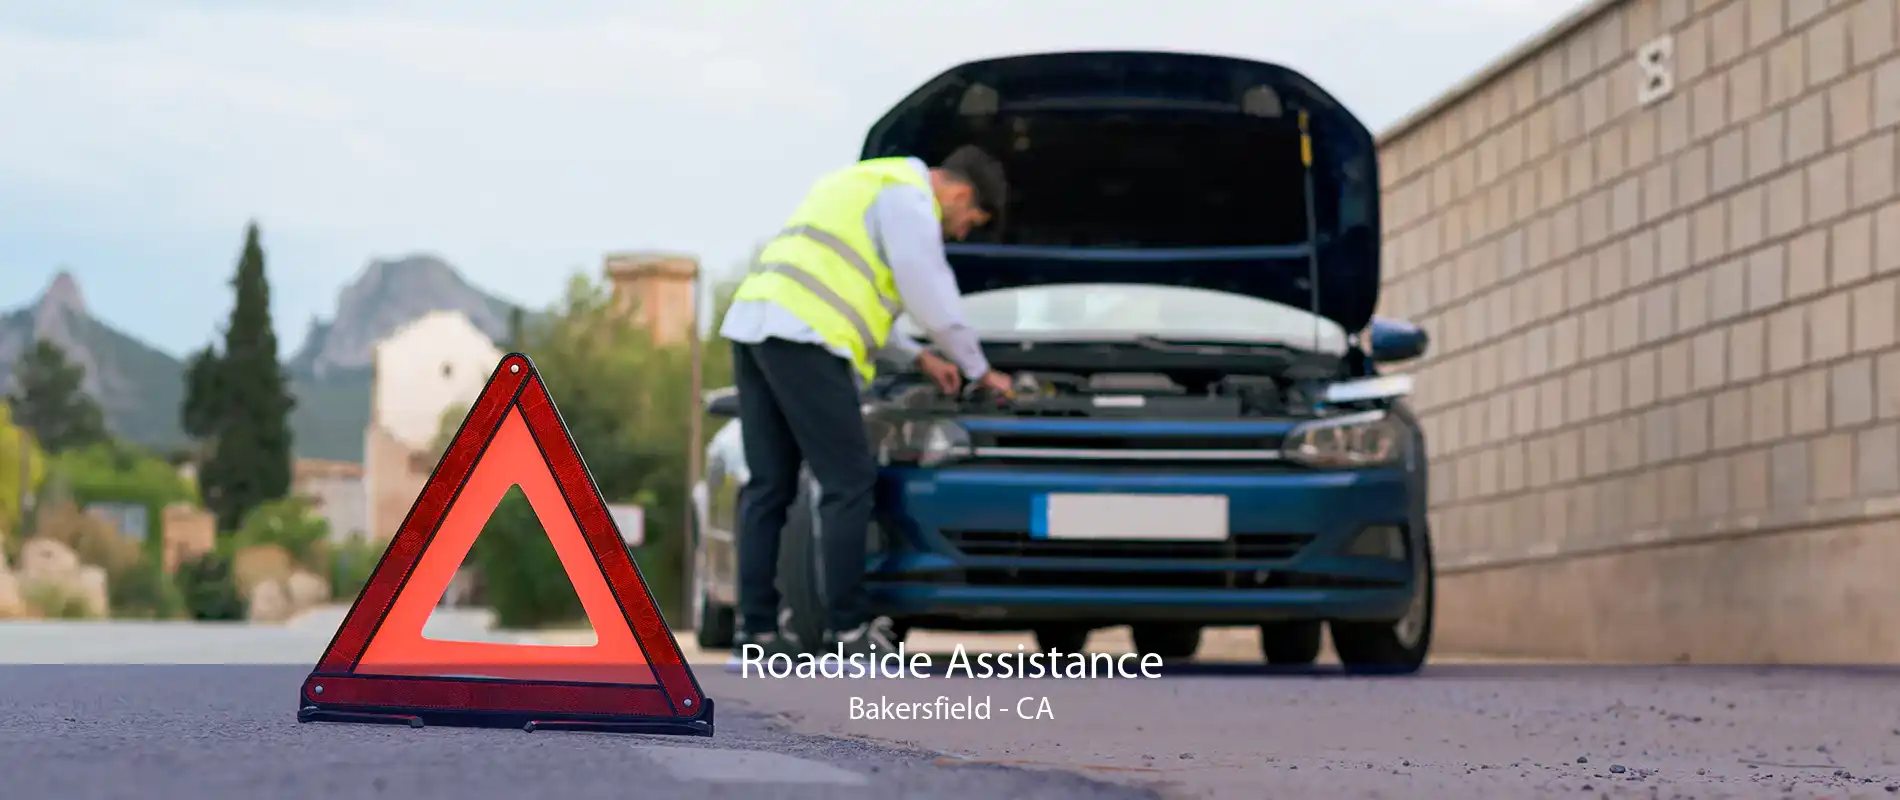 Roadside Assistance Bakersfield - CA